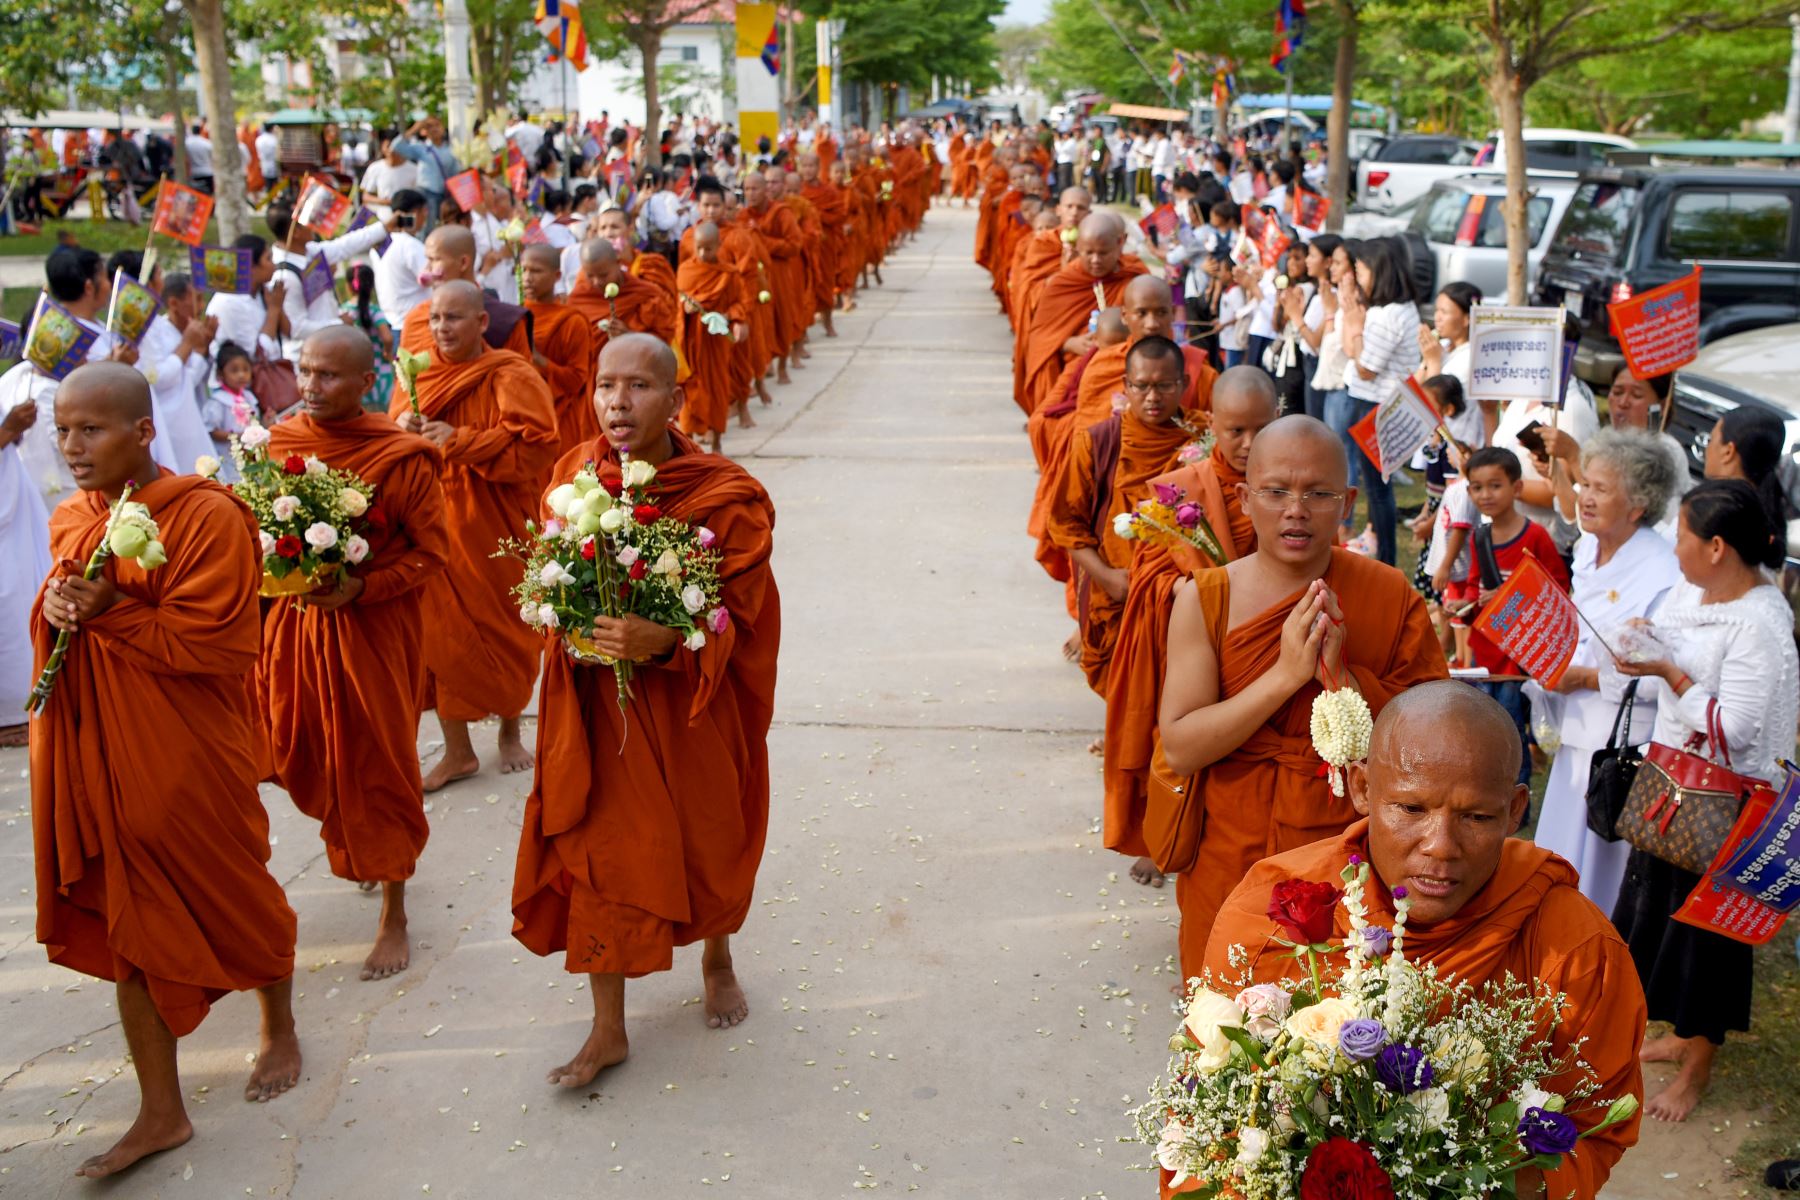 Los monjes budistas camboyanos marchan durante la celebración budista de Visak Bochea en una pagoda en Phnom Penh .
Foto:AFP